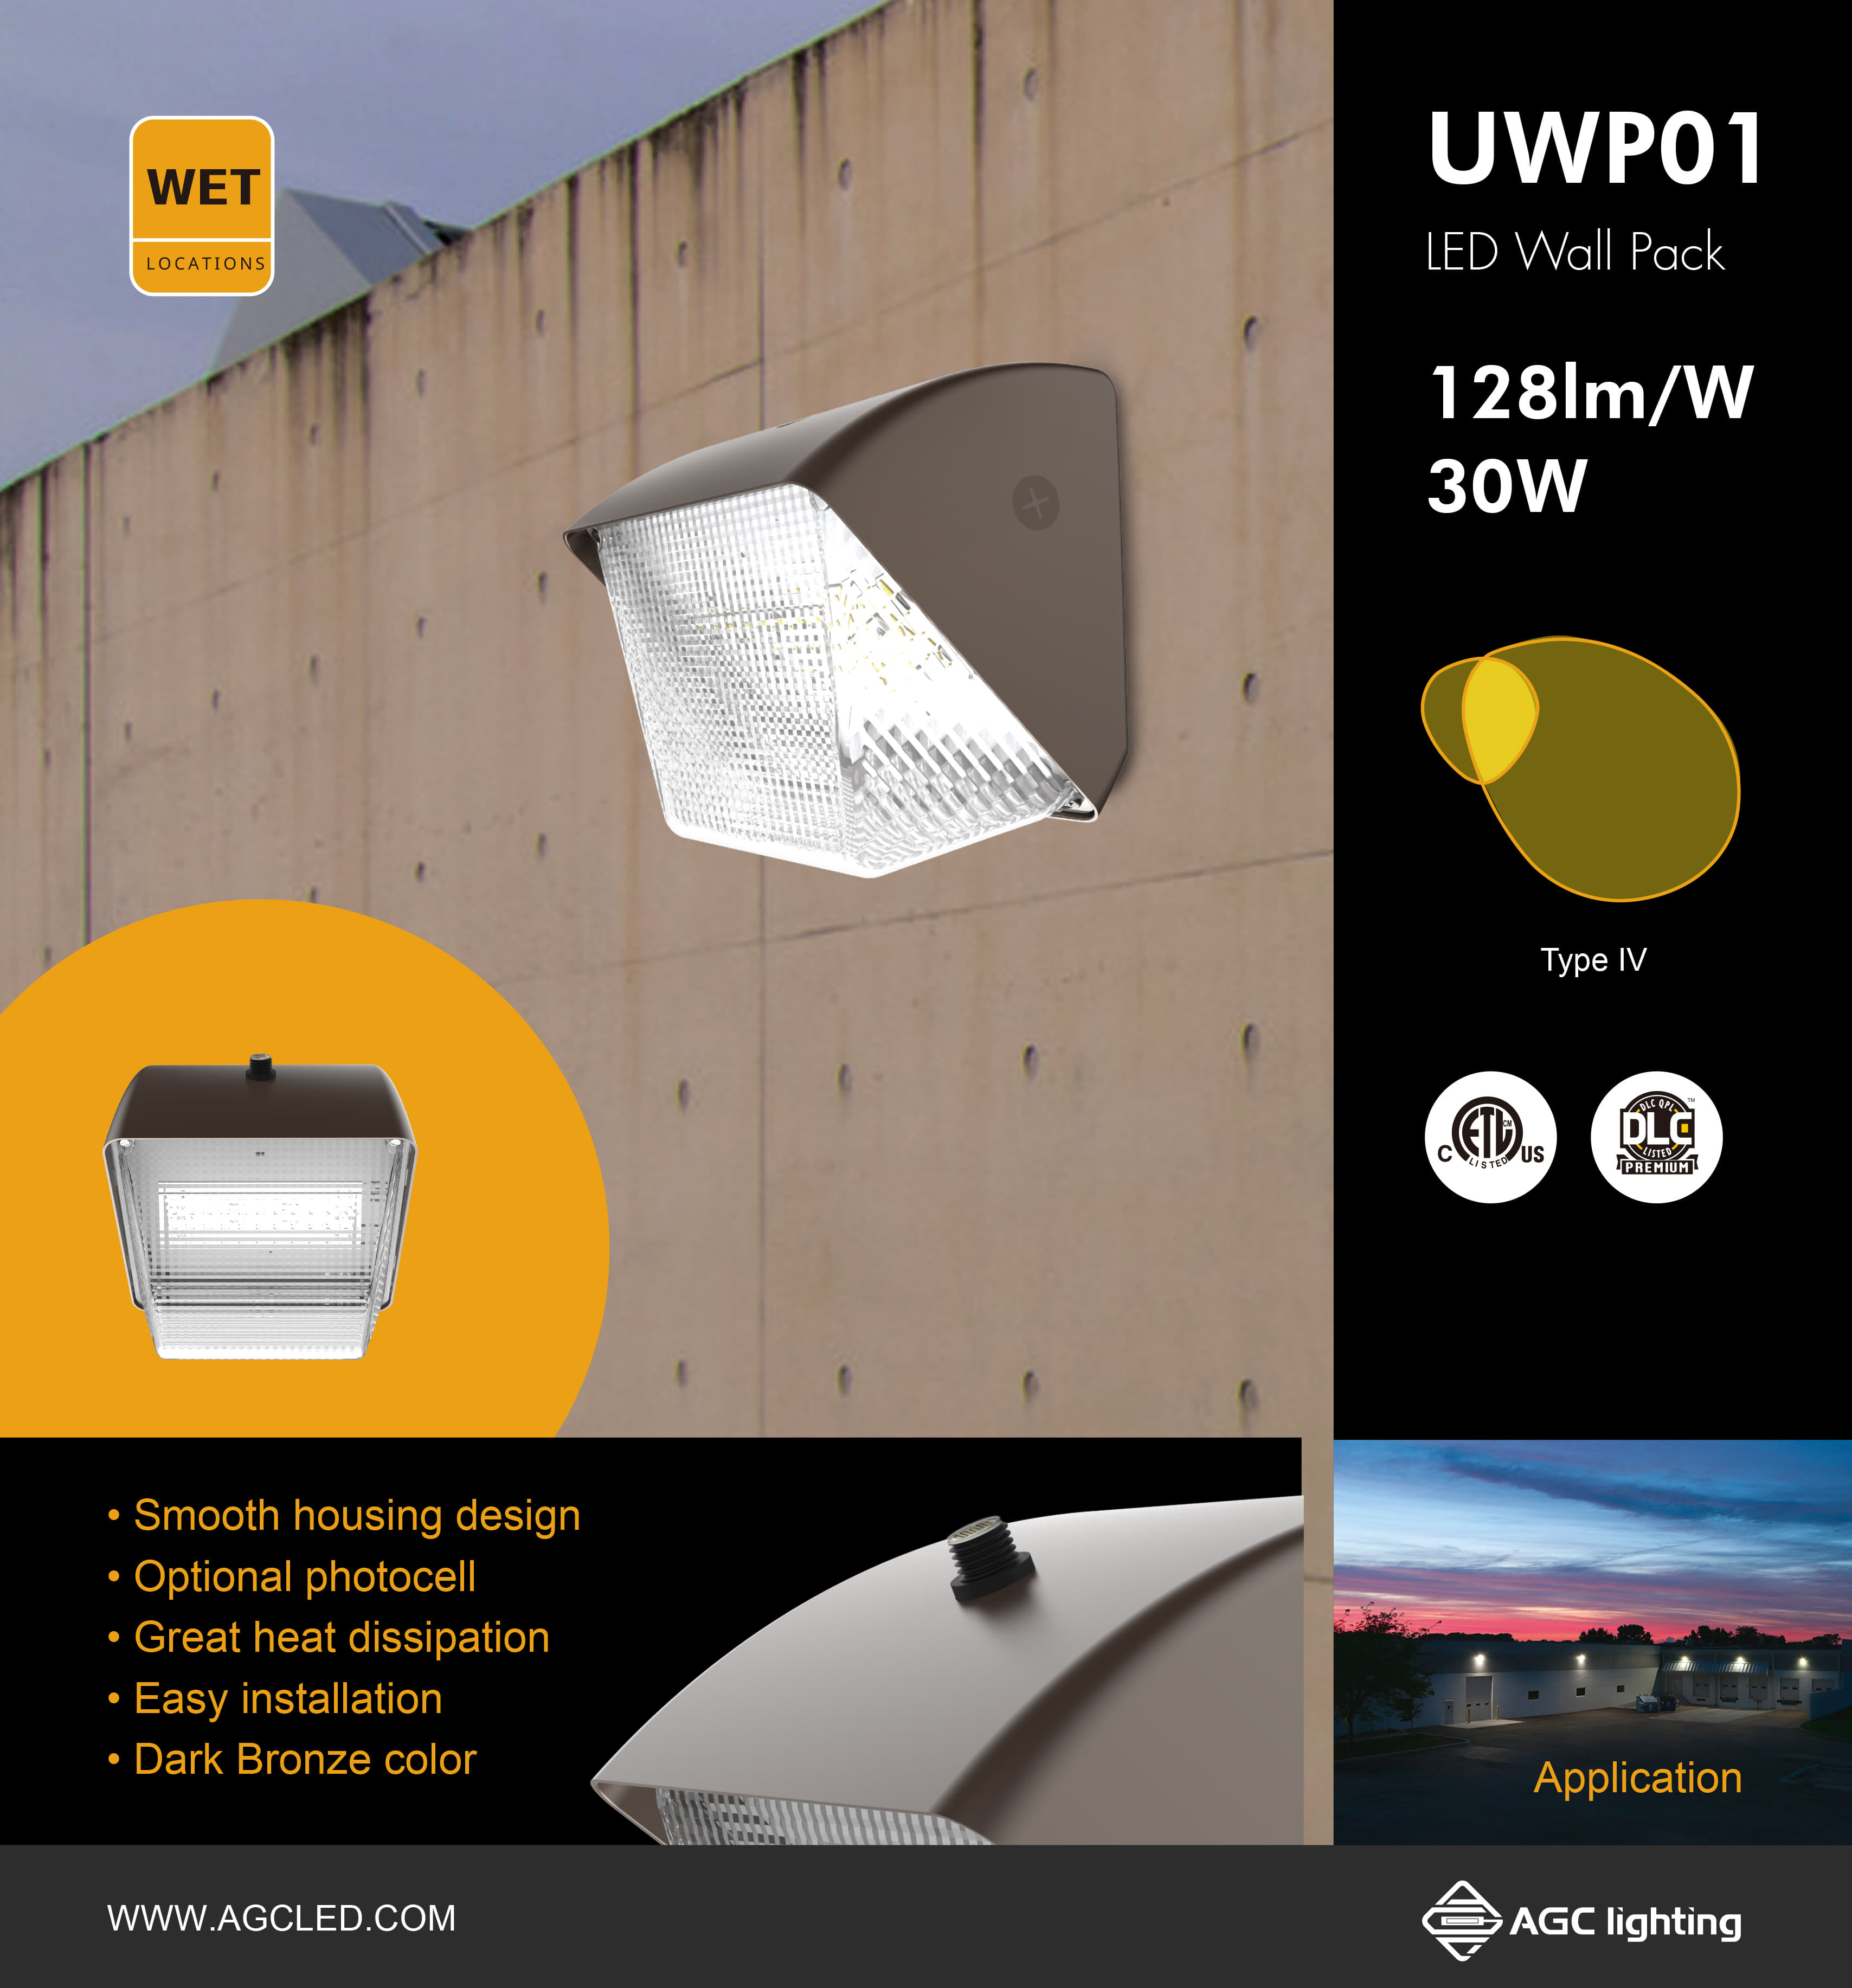 UWP01 wallpack